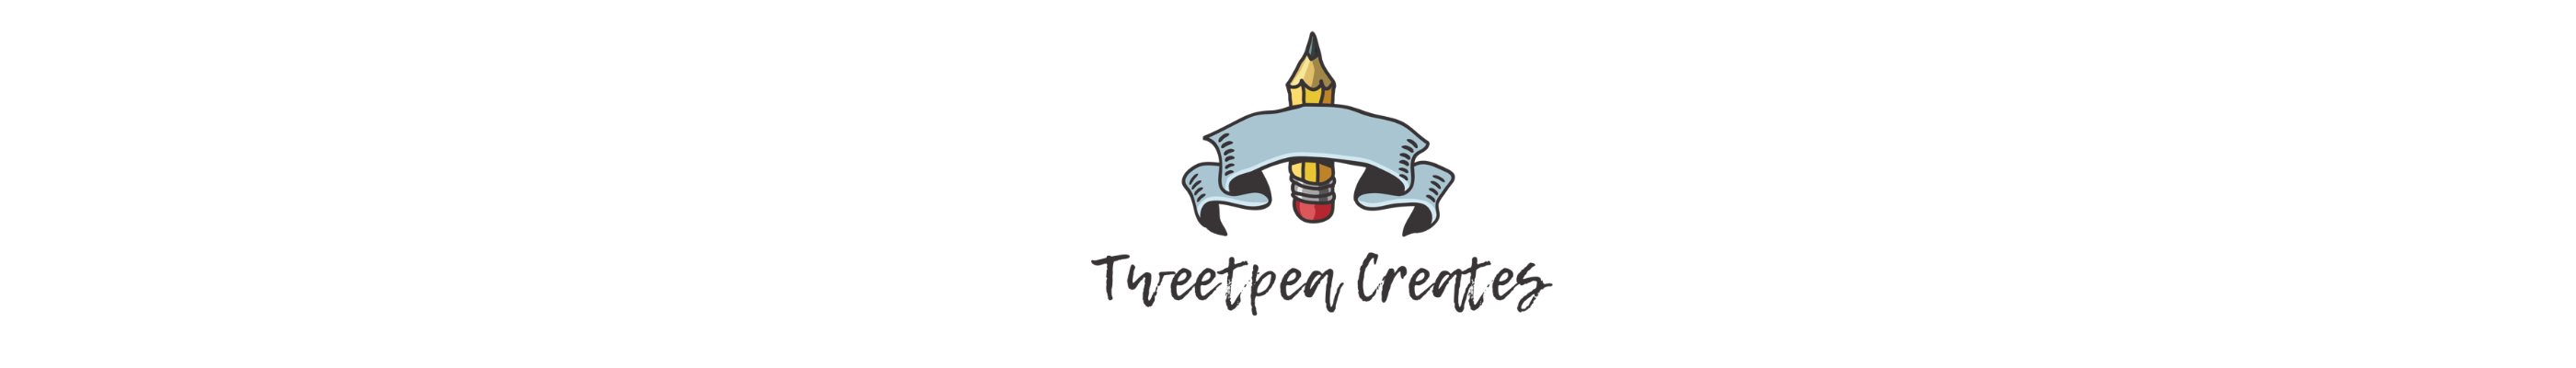 Tweetpea Creates